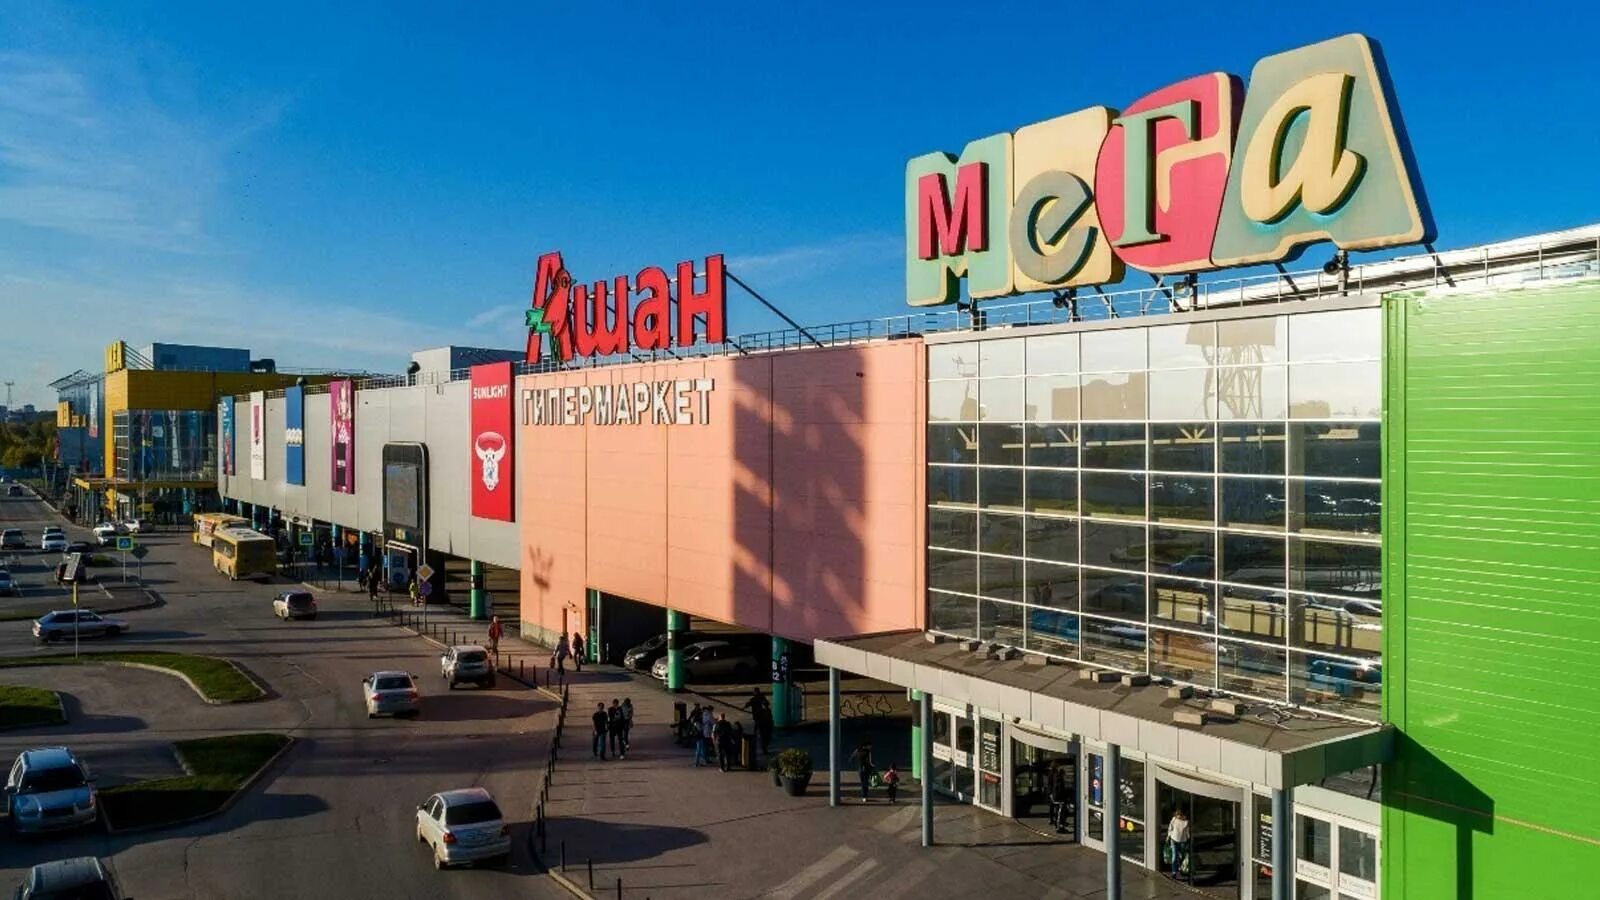 Мега Новосибирск торговый центр. Новосибирск торговый центр мега Ашан. ТЦ мега икеа Новосибирск. Мега Новосибирск магазины.